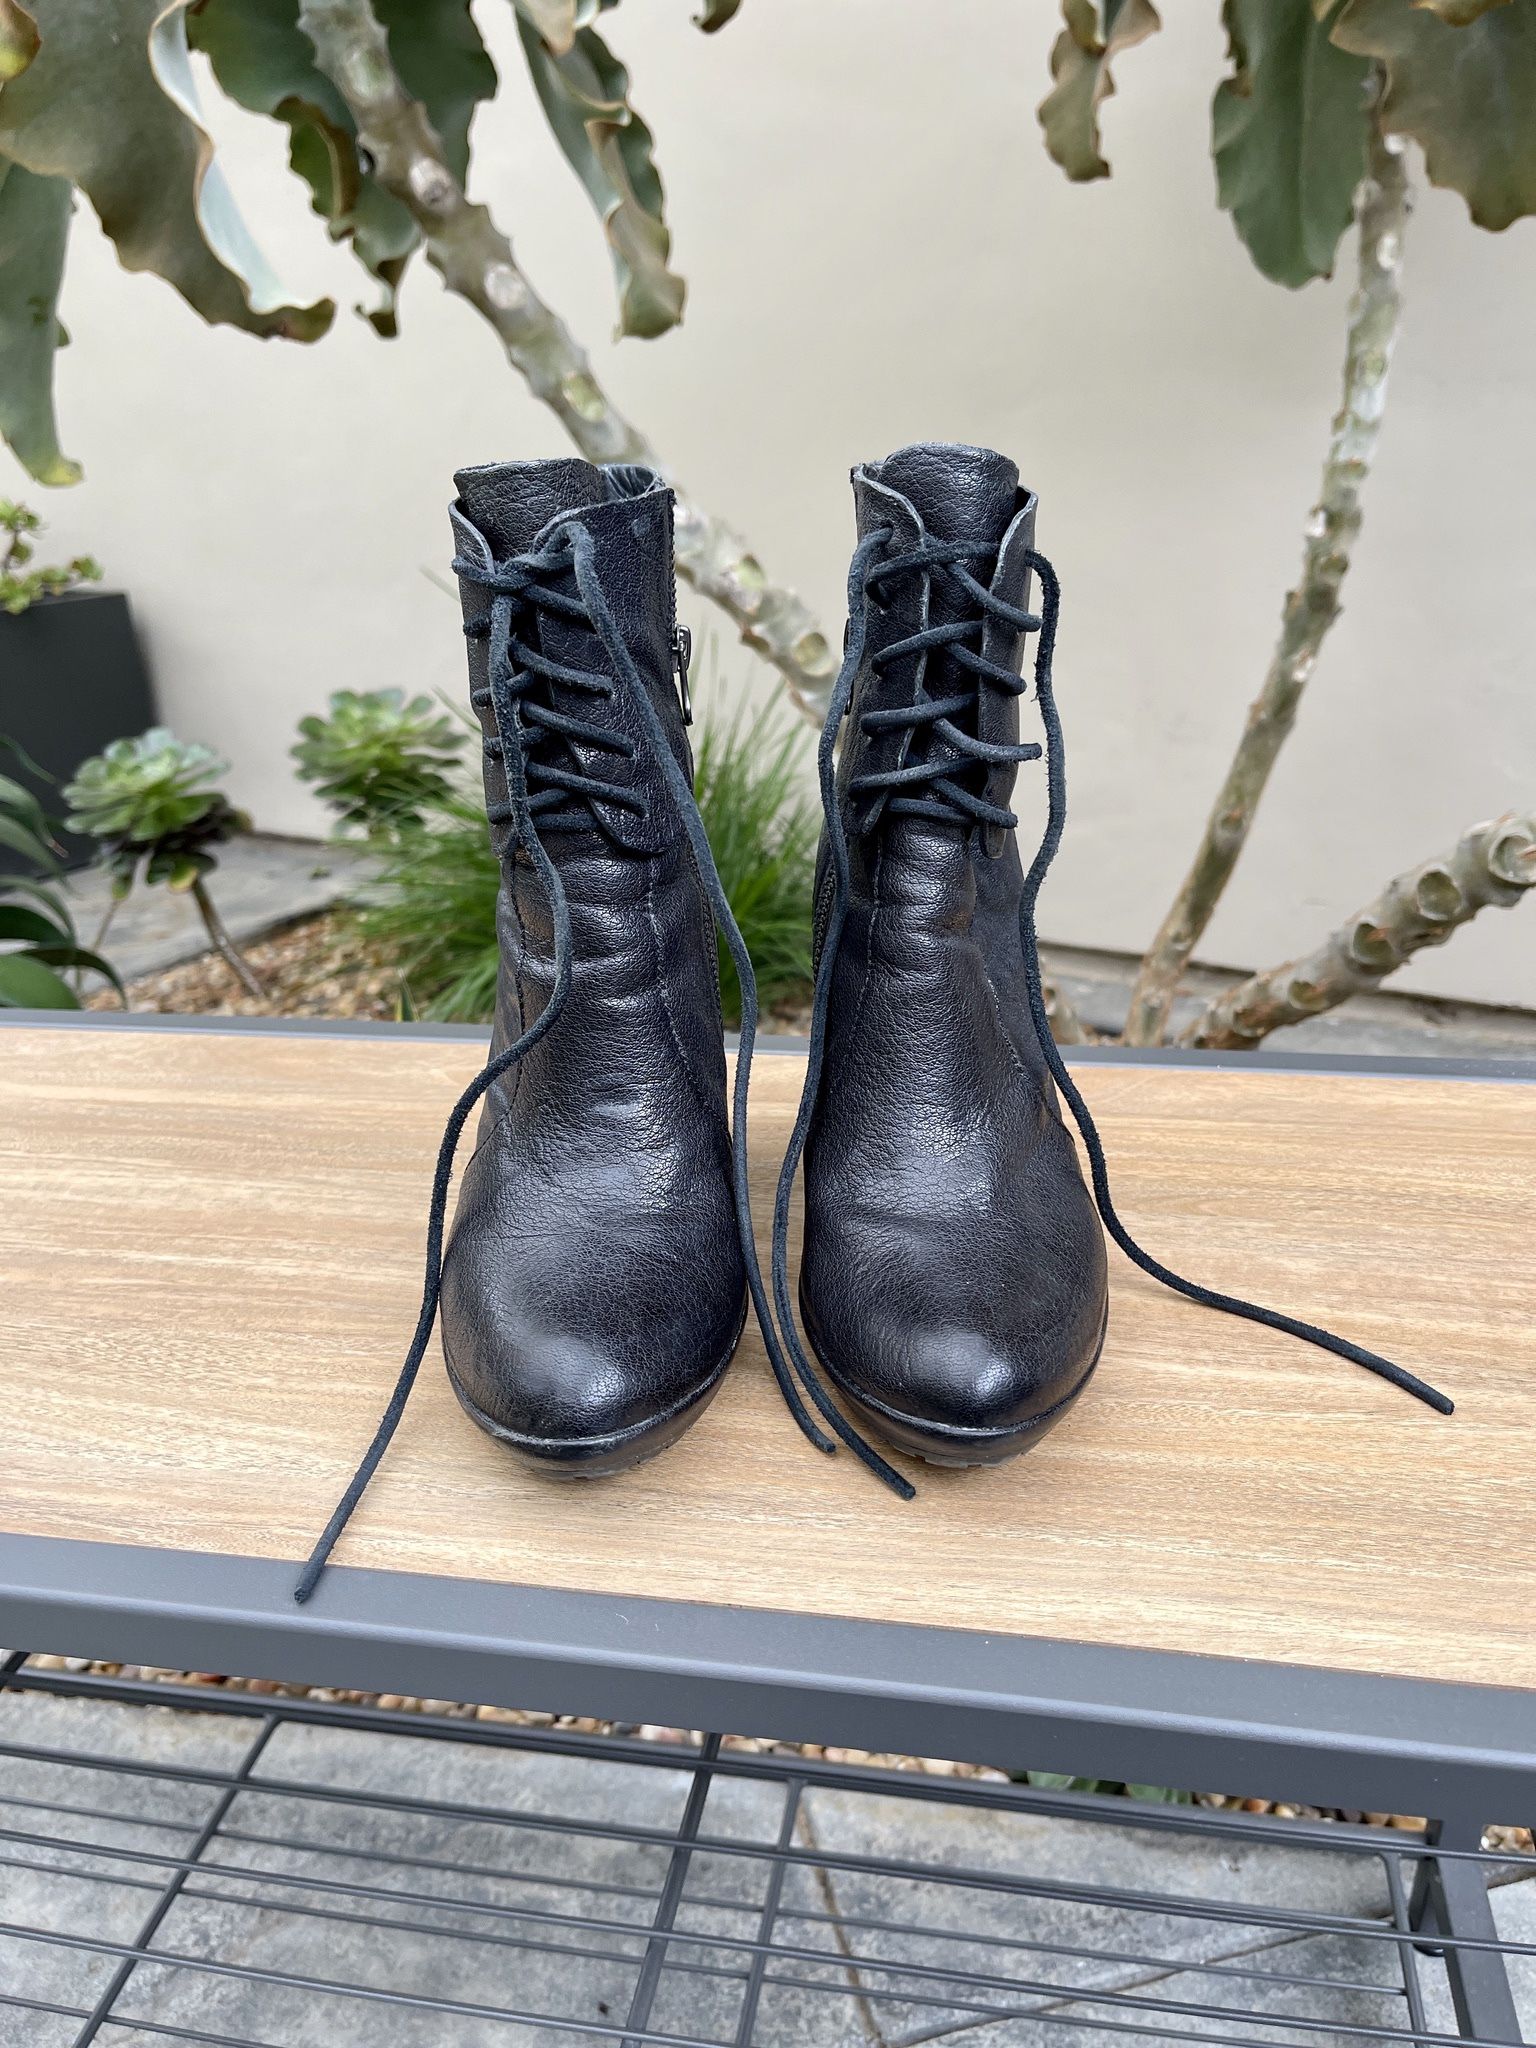 Nordstrom Kork-Ease Black Leather Boots Size 7